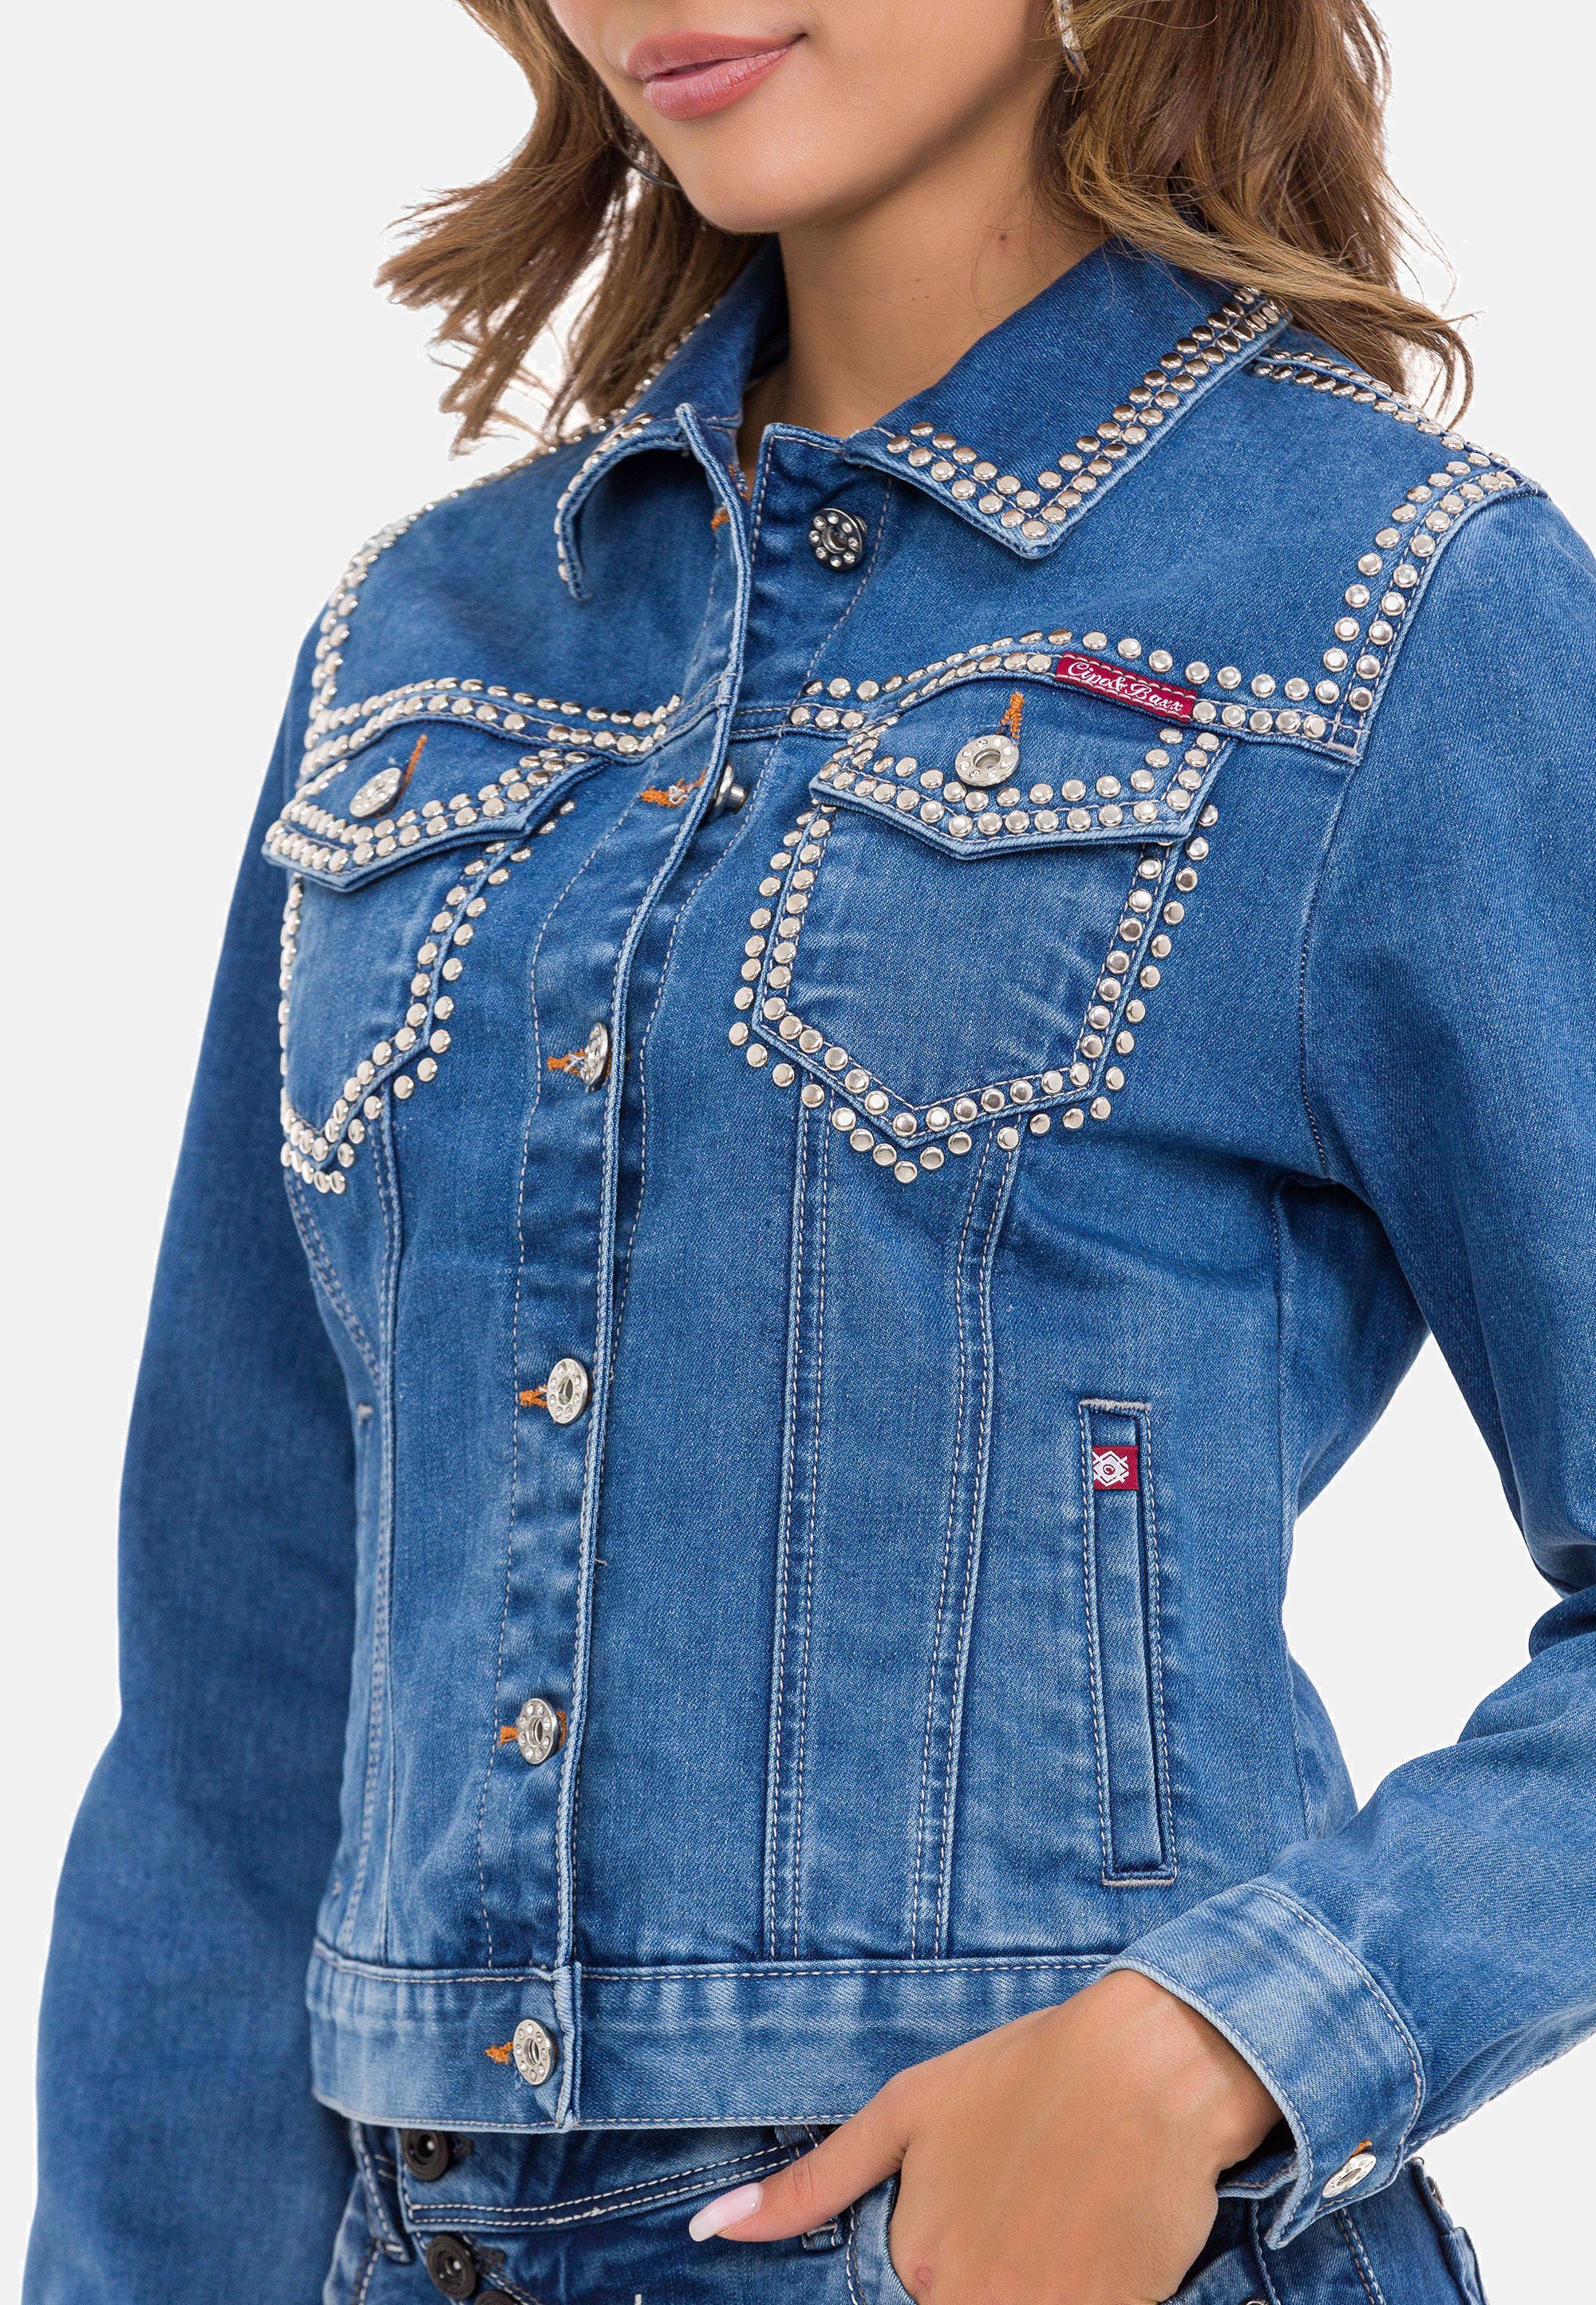 Cipo & Baxx Jeansjacke Nieten-Details blau modernen mit